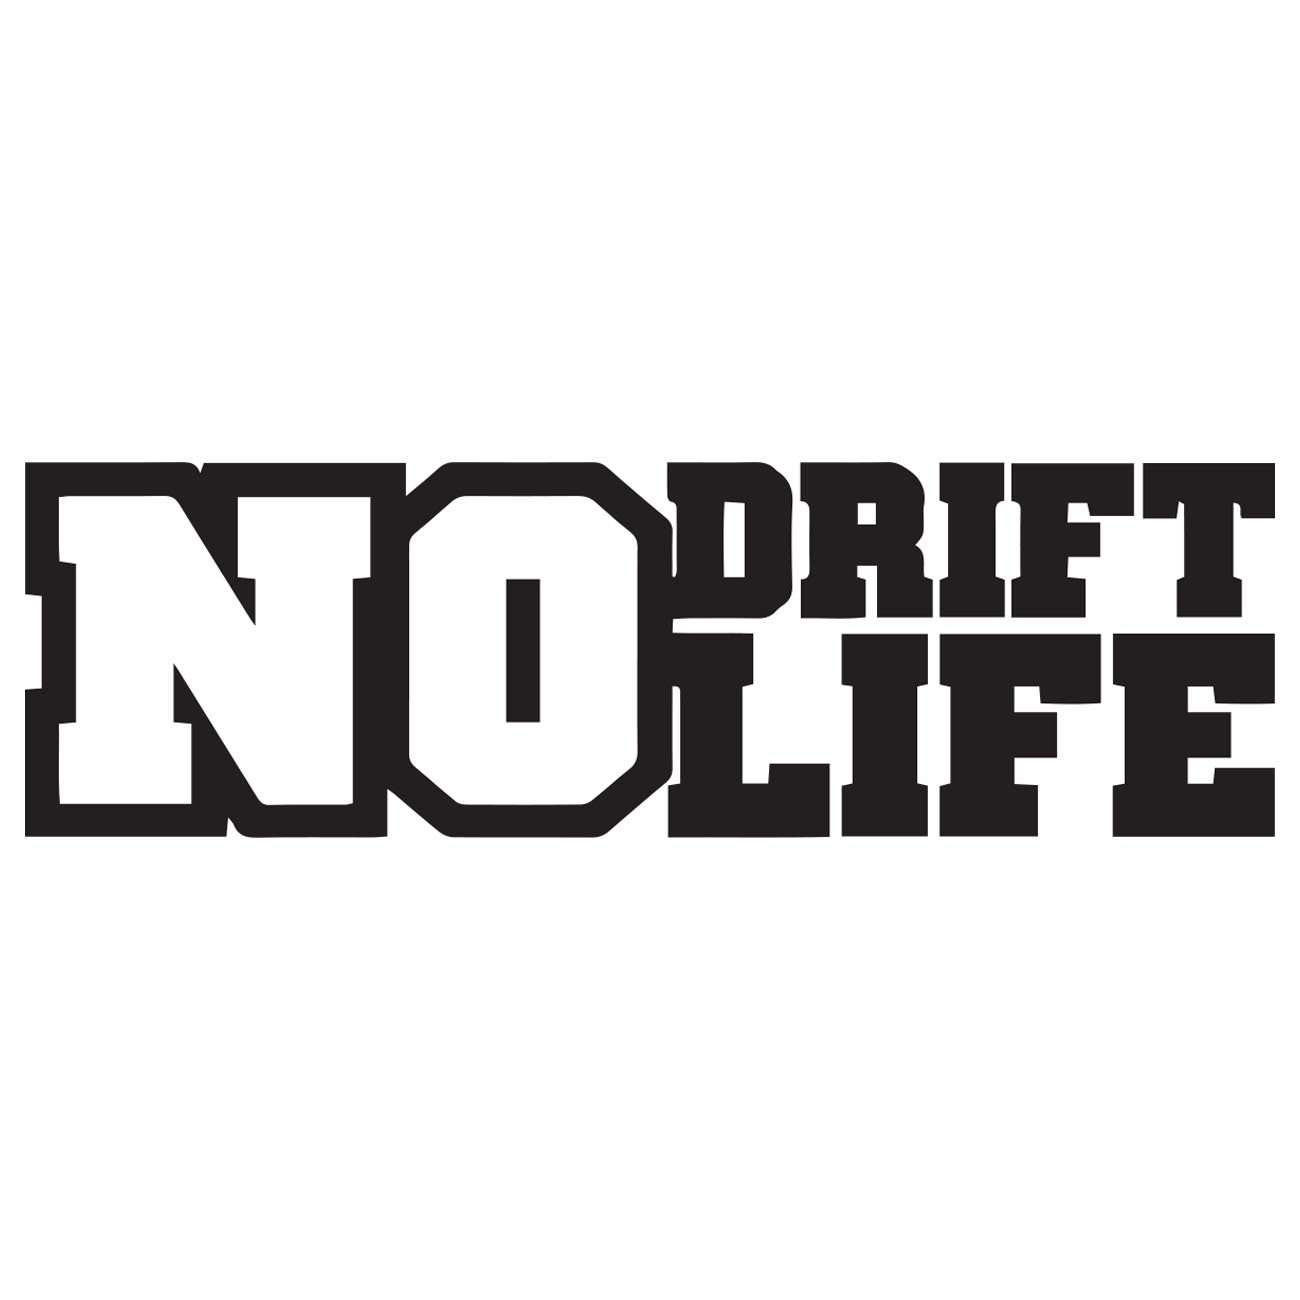 No life no drift